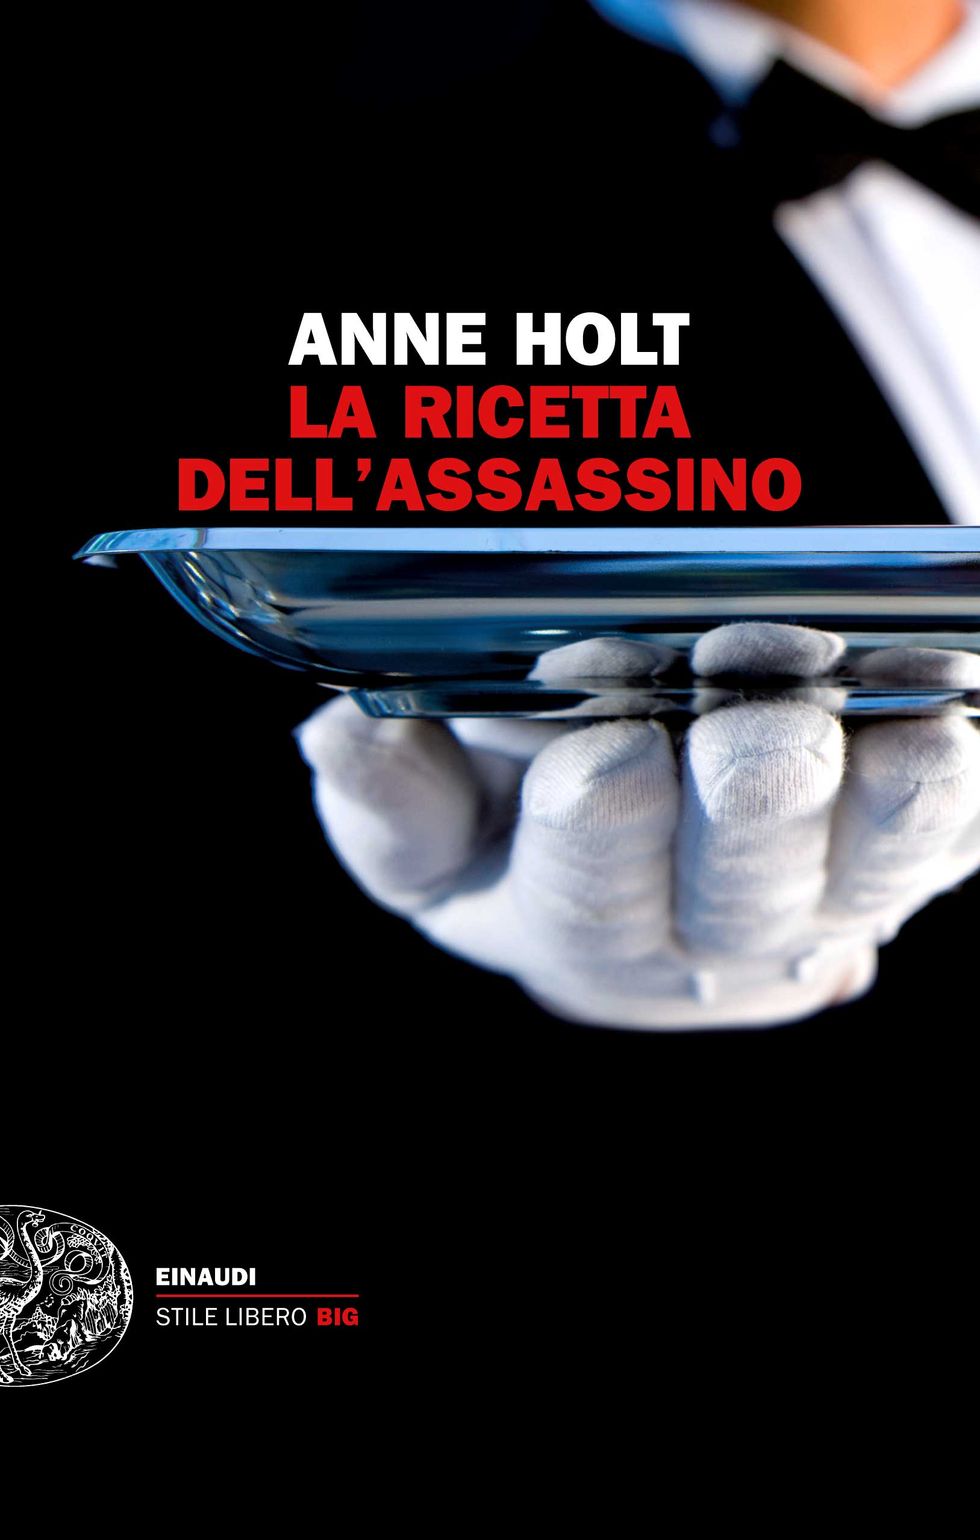 Anne Holt, "La ricetta dell'assassino"